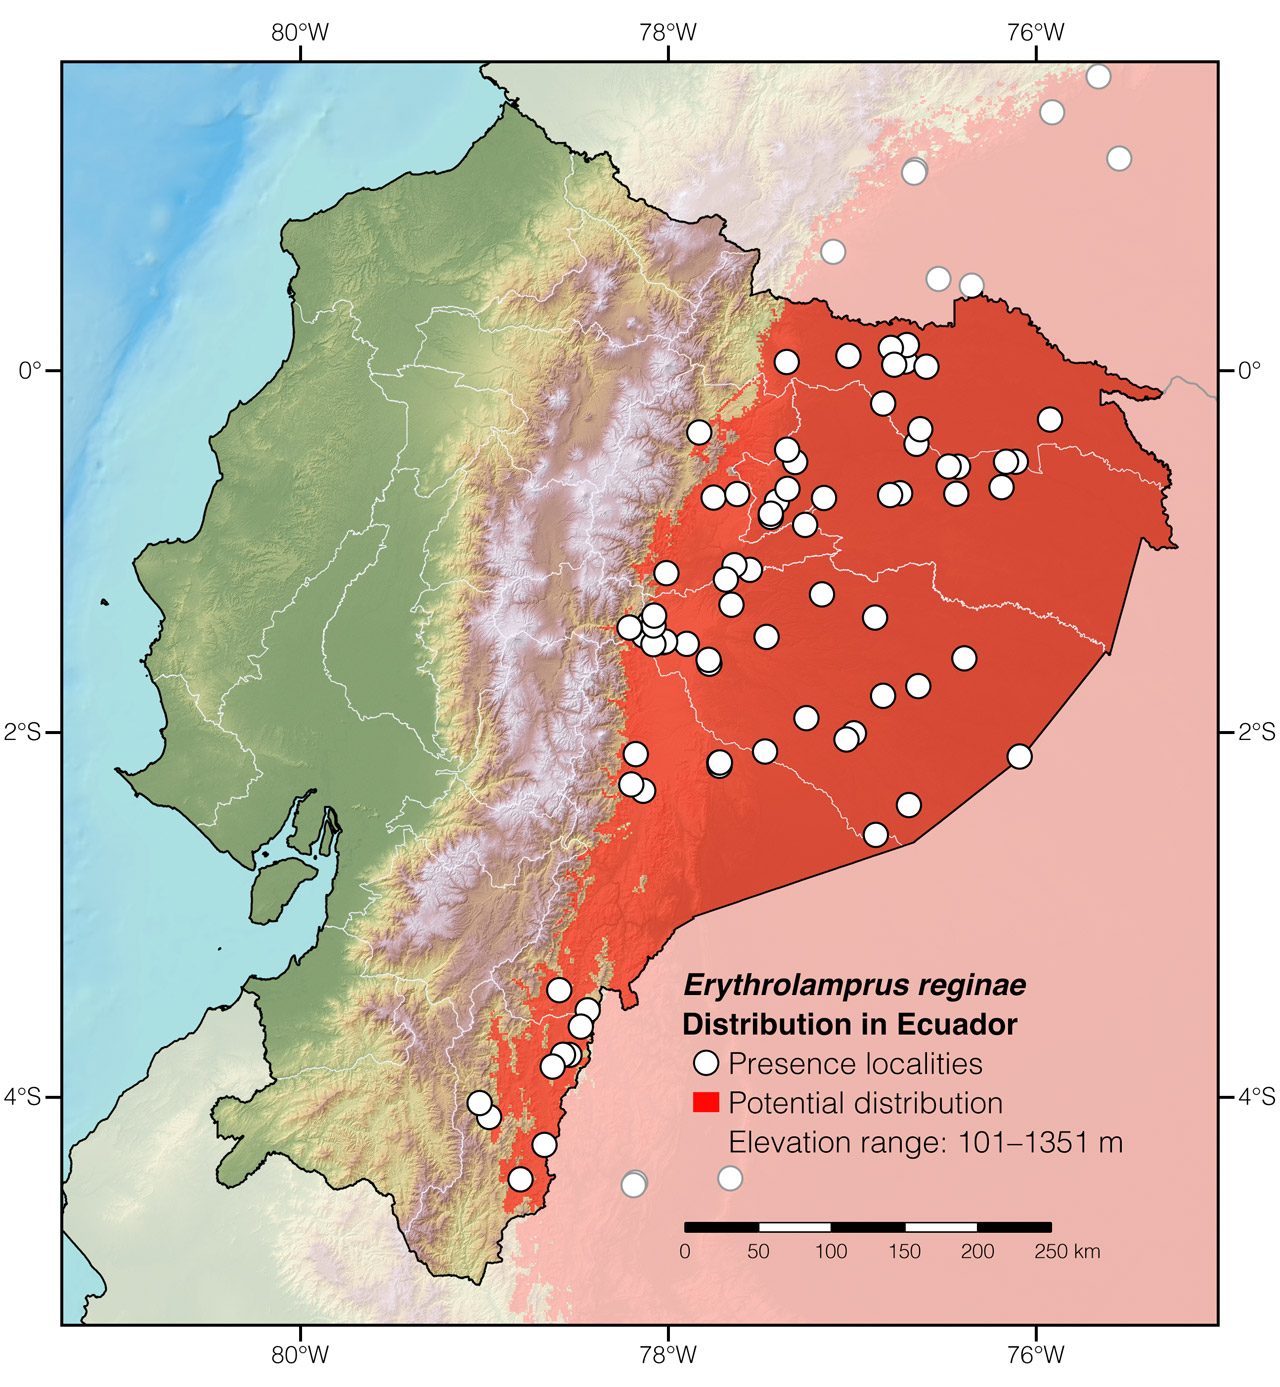 Distribution of Erythrolamprus reginae in Ecuador